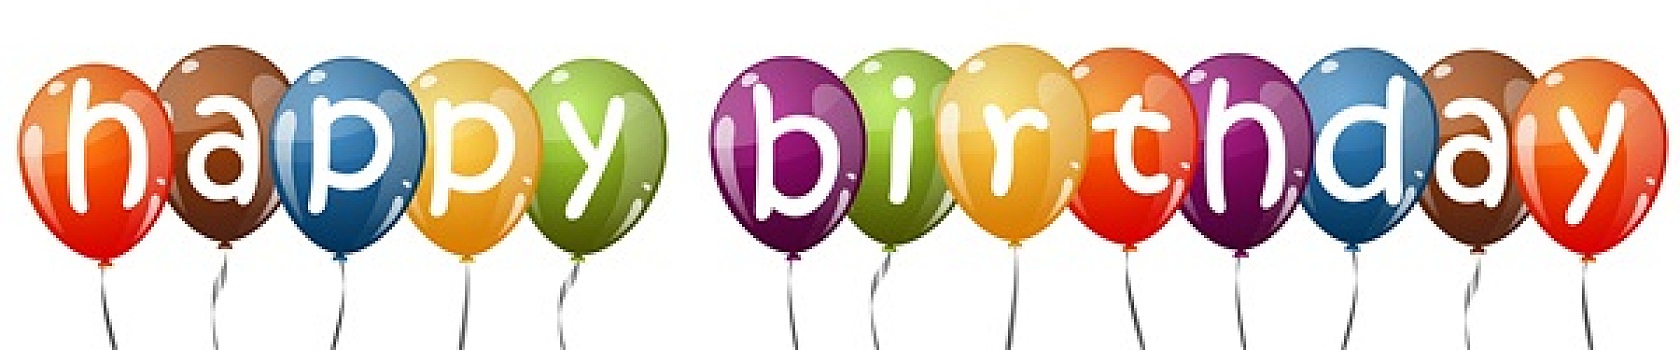 彩色,气球,文字,生日快乐